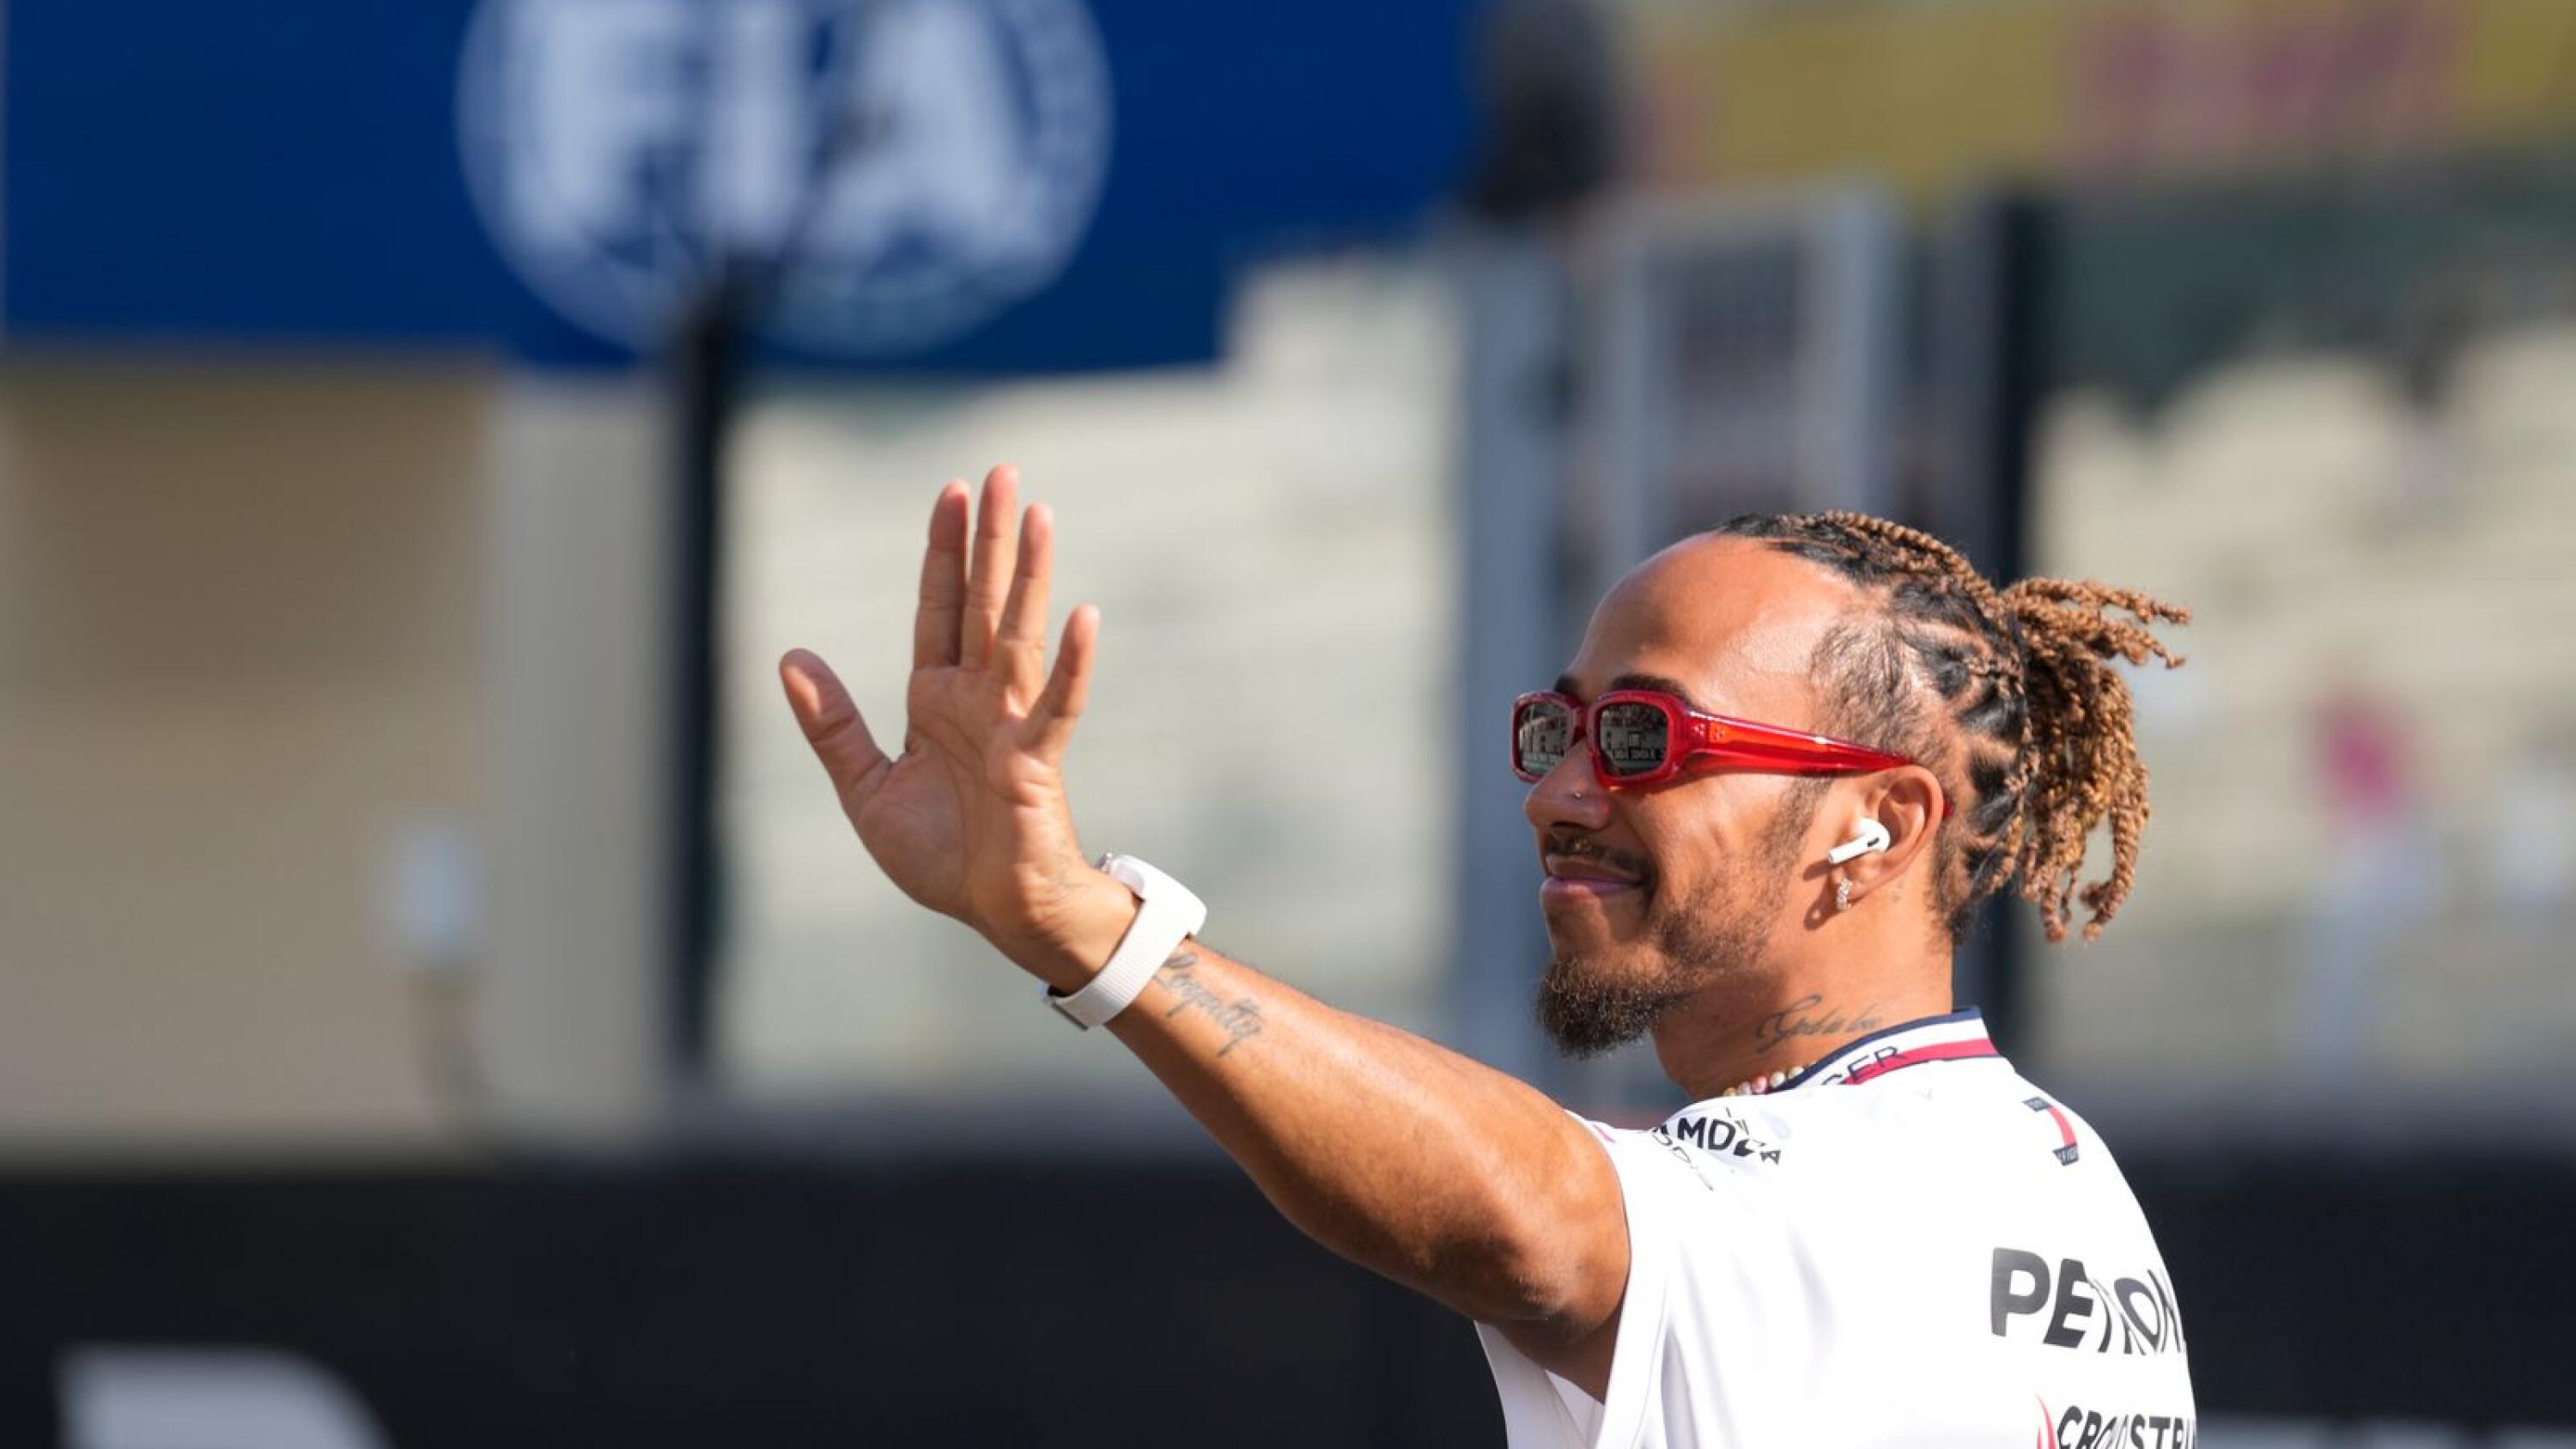 Former F1 champion returns to Ferrari 